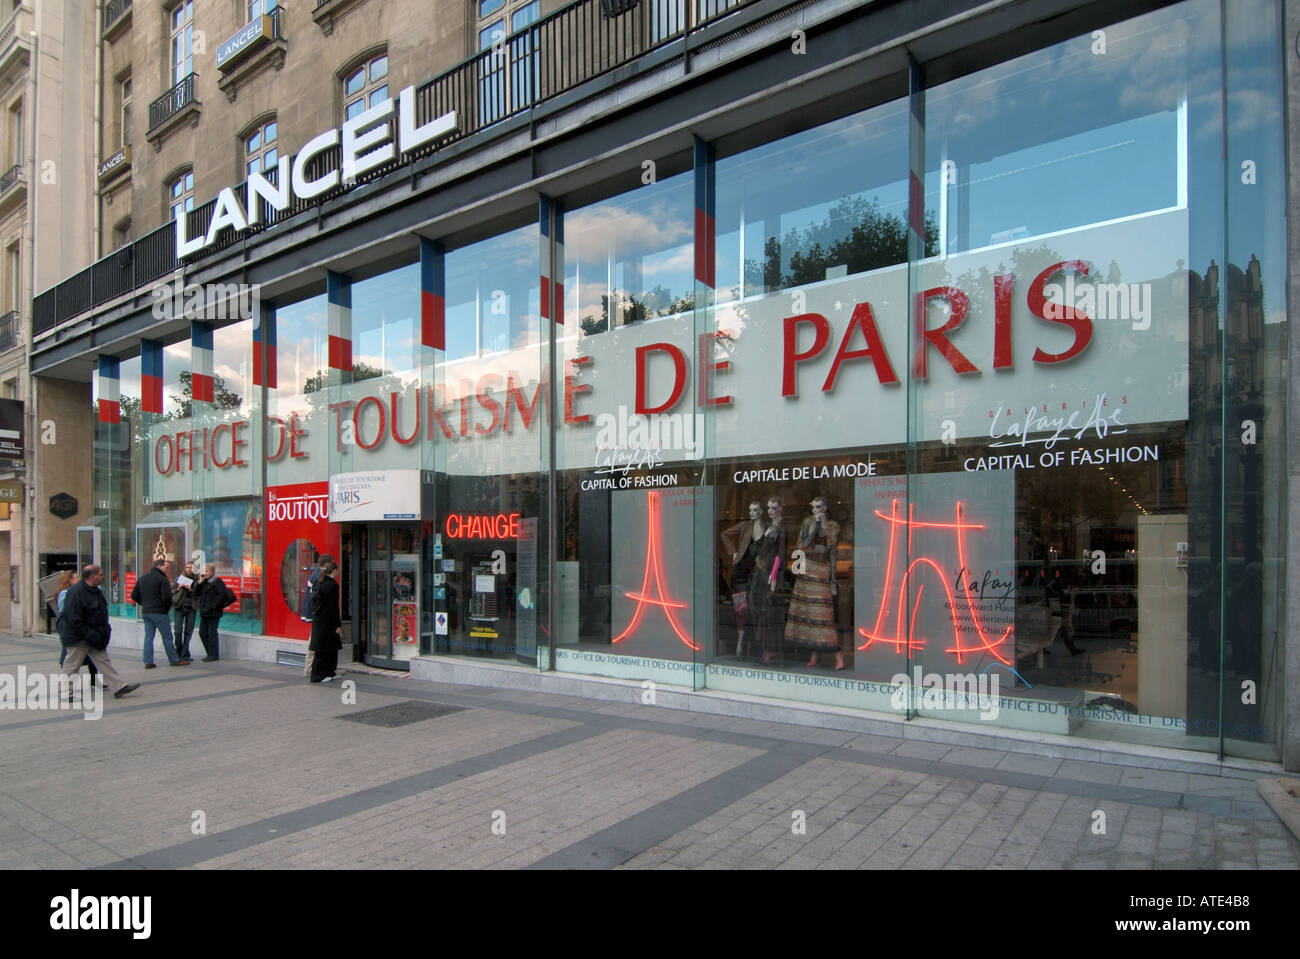 Paris Avenue Champs Elysees Office de tourisme de Paris tourist information  center centre Stock Photo - Alamy